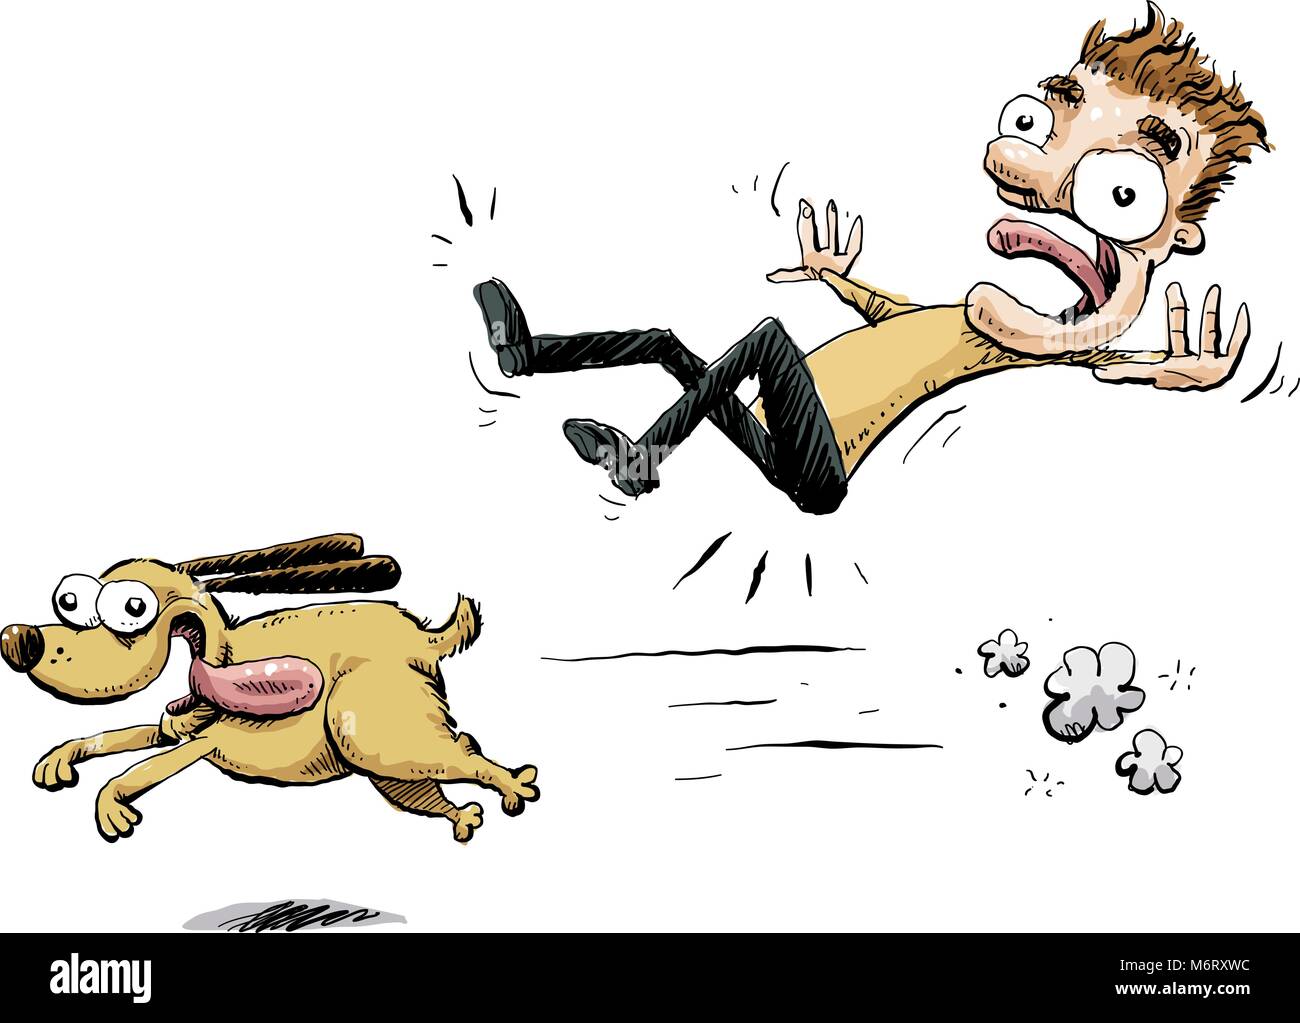 Un felice, cartoon dog trattini in avanti, rovesciare un uomo in piedi. Illustrazione Vettoriale